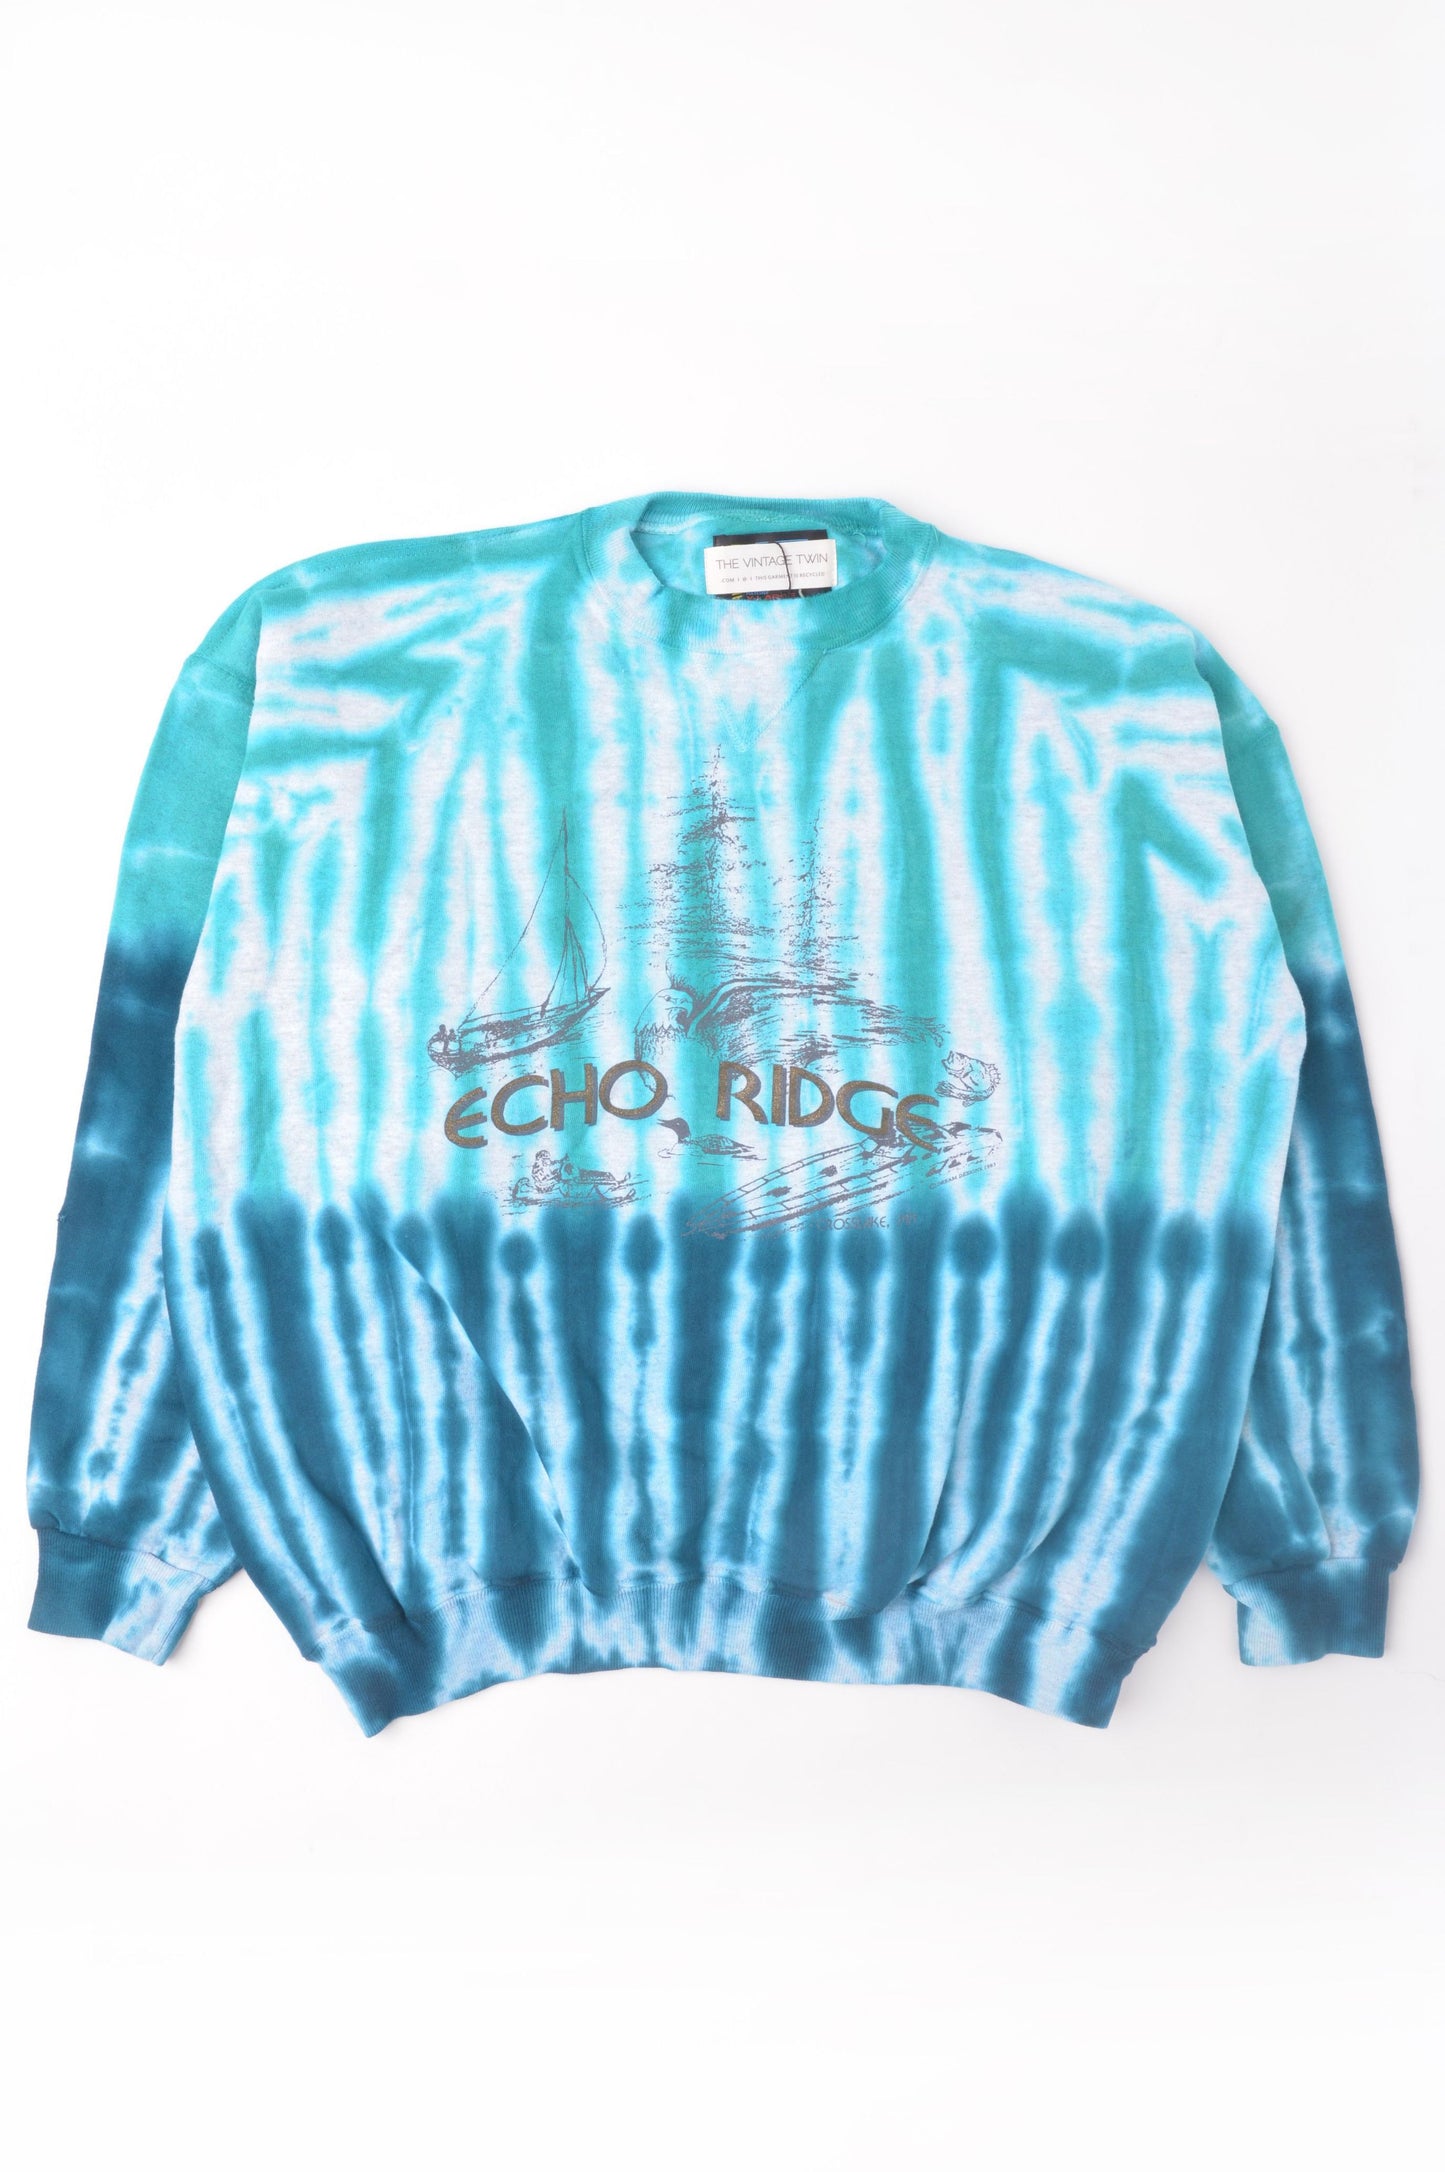 Echo Ridge Tie Dye Sweatshirt